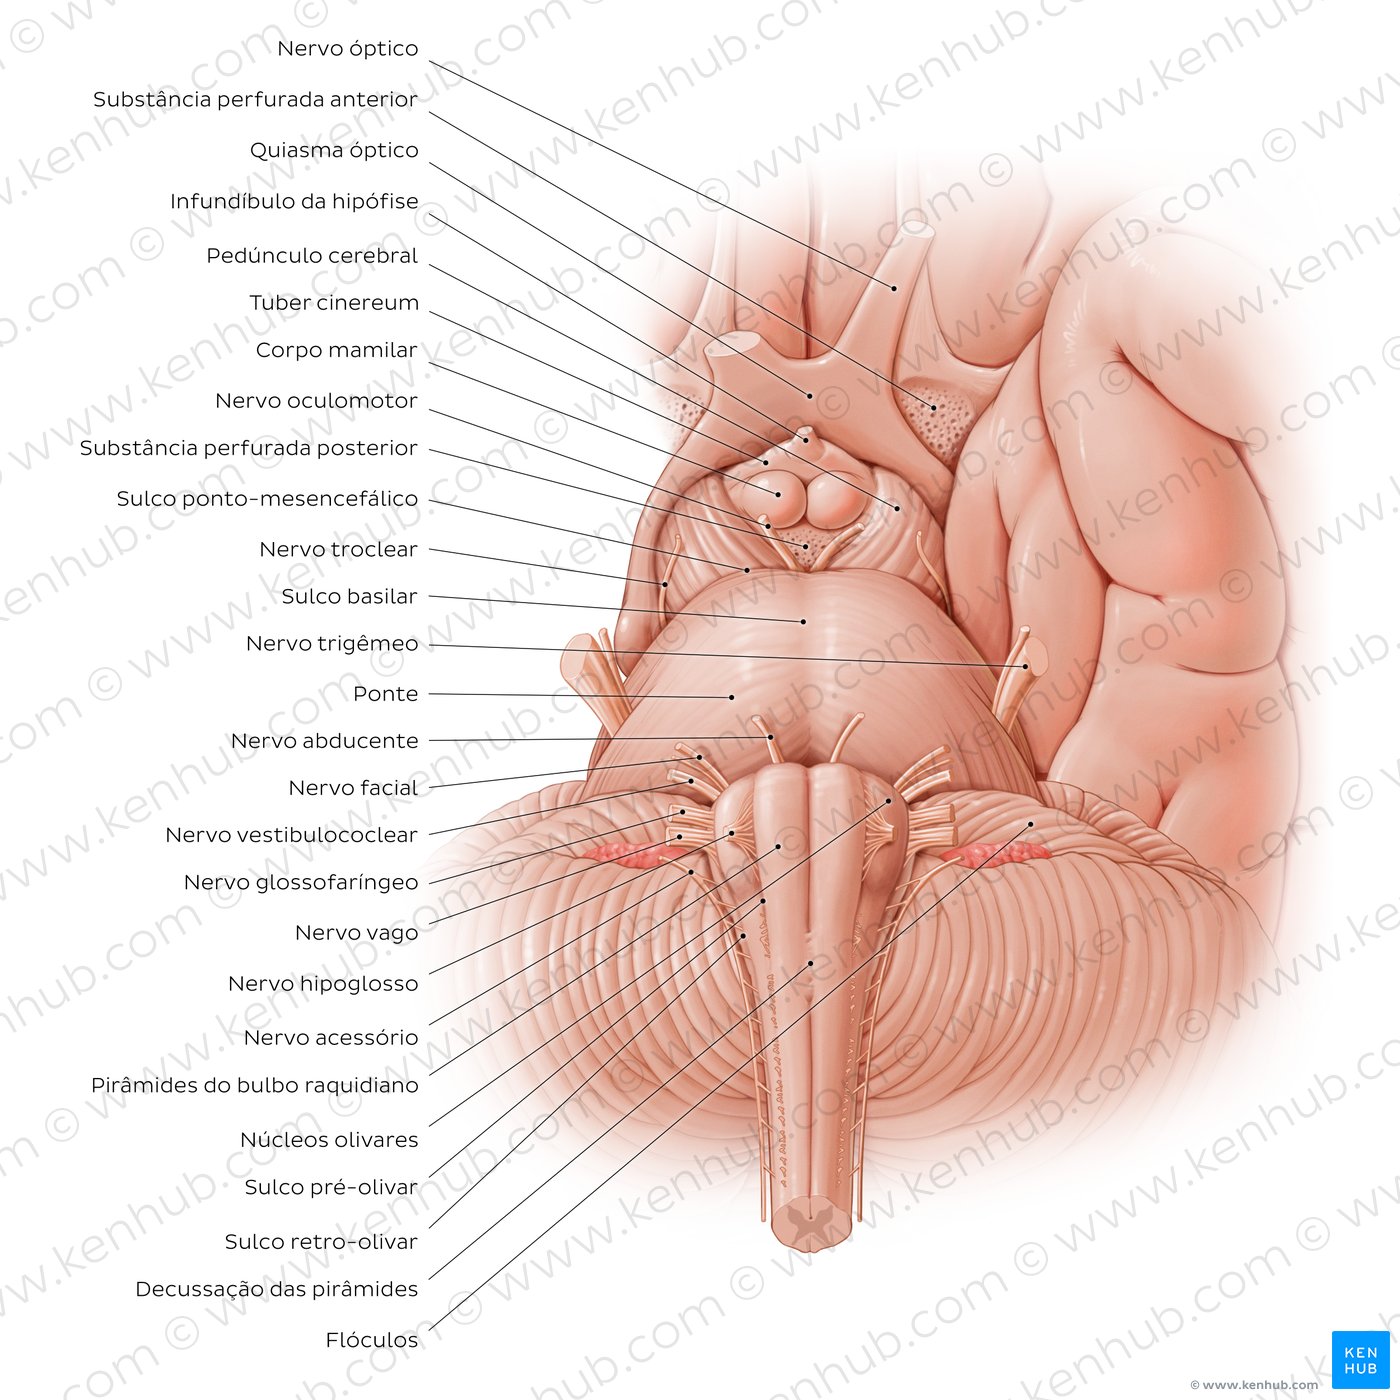 Anatomia do tronco cerebral - vista anterior